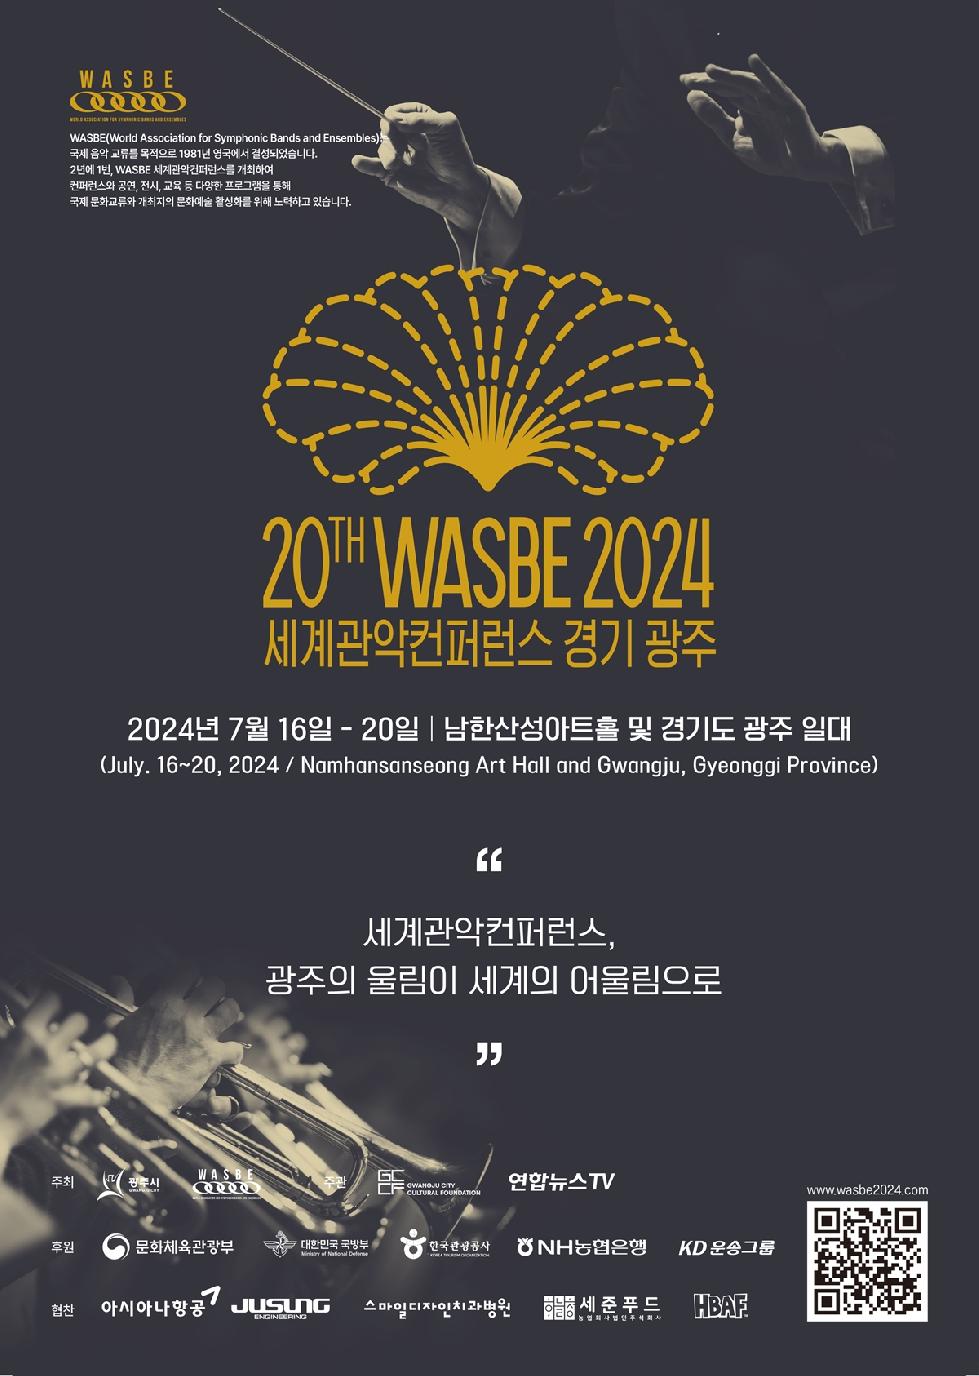 광주시 주성엔지니어링, WASBE 세계관악컨퍼런스 공식협찬 참여